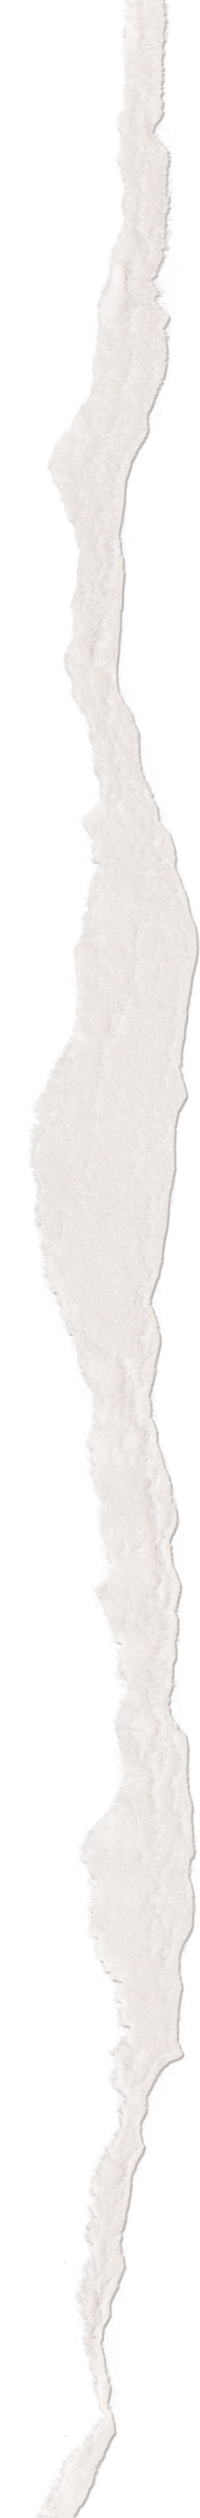 White torn paper illustration